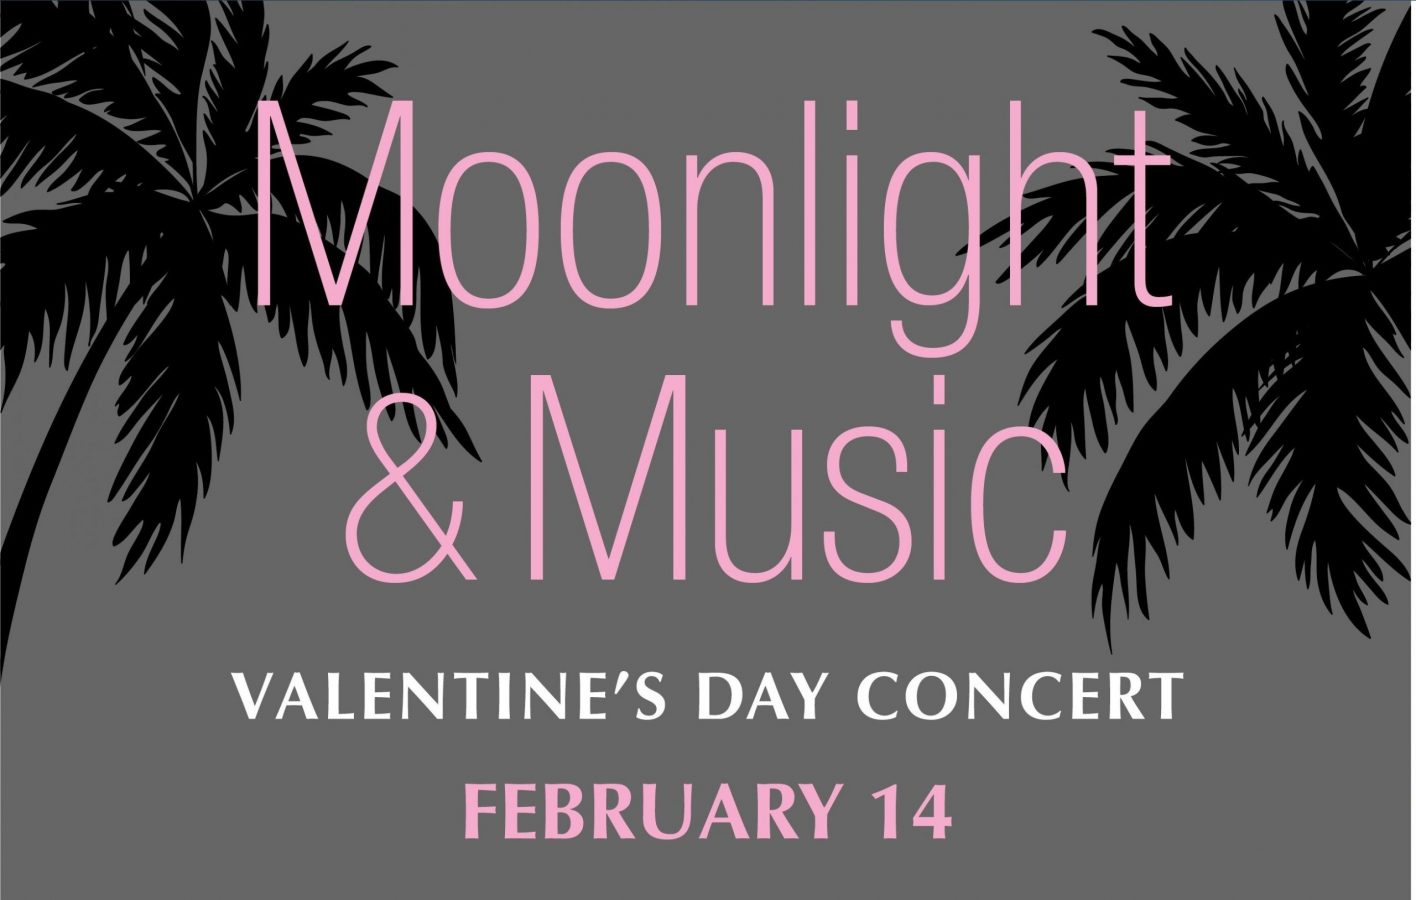 Valentines Day Concert at Deering Estate